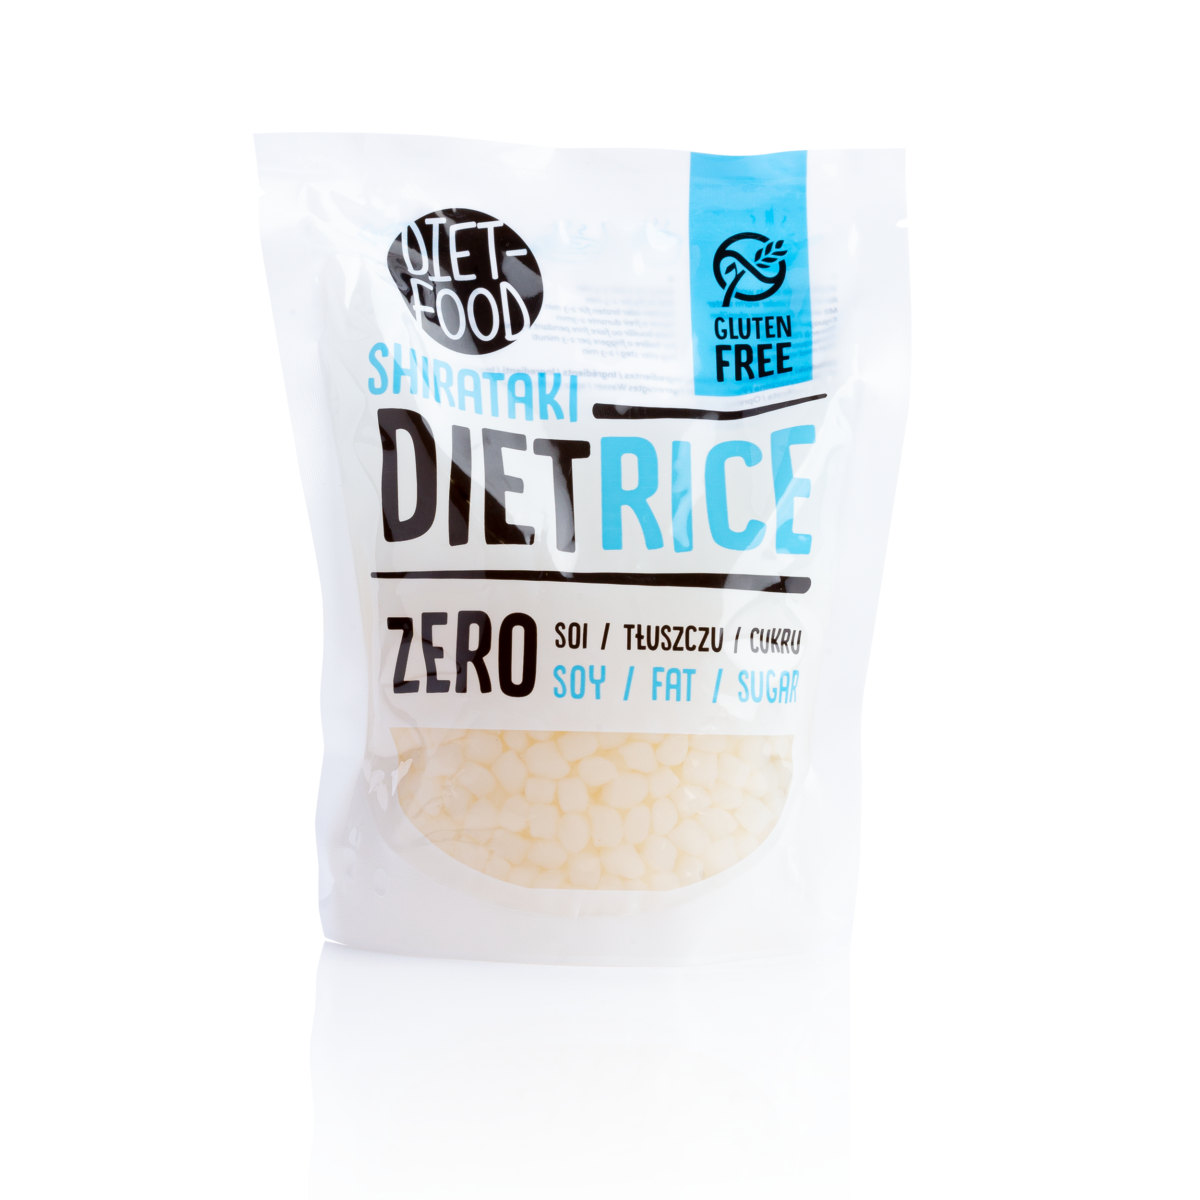 Ryż Zero Konjac z firmy Diet Food. Białe opakowanie z niebieskimi elementami.